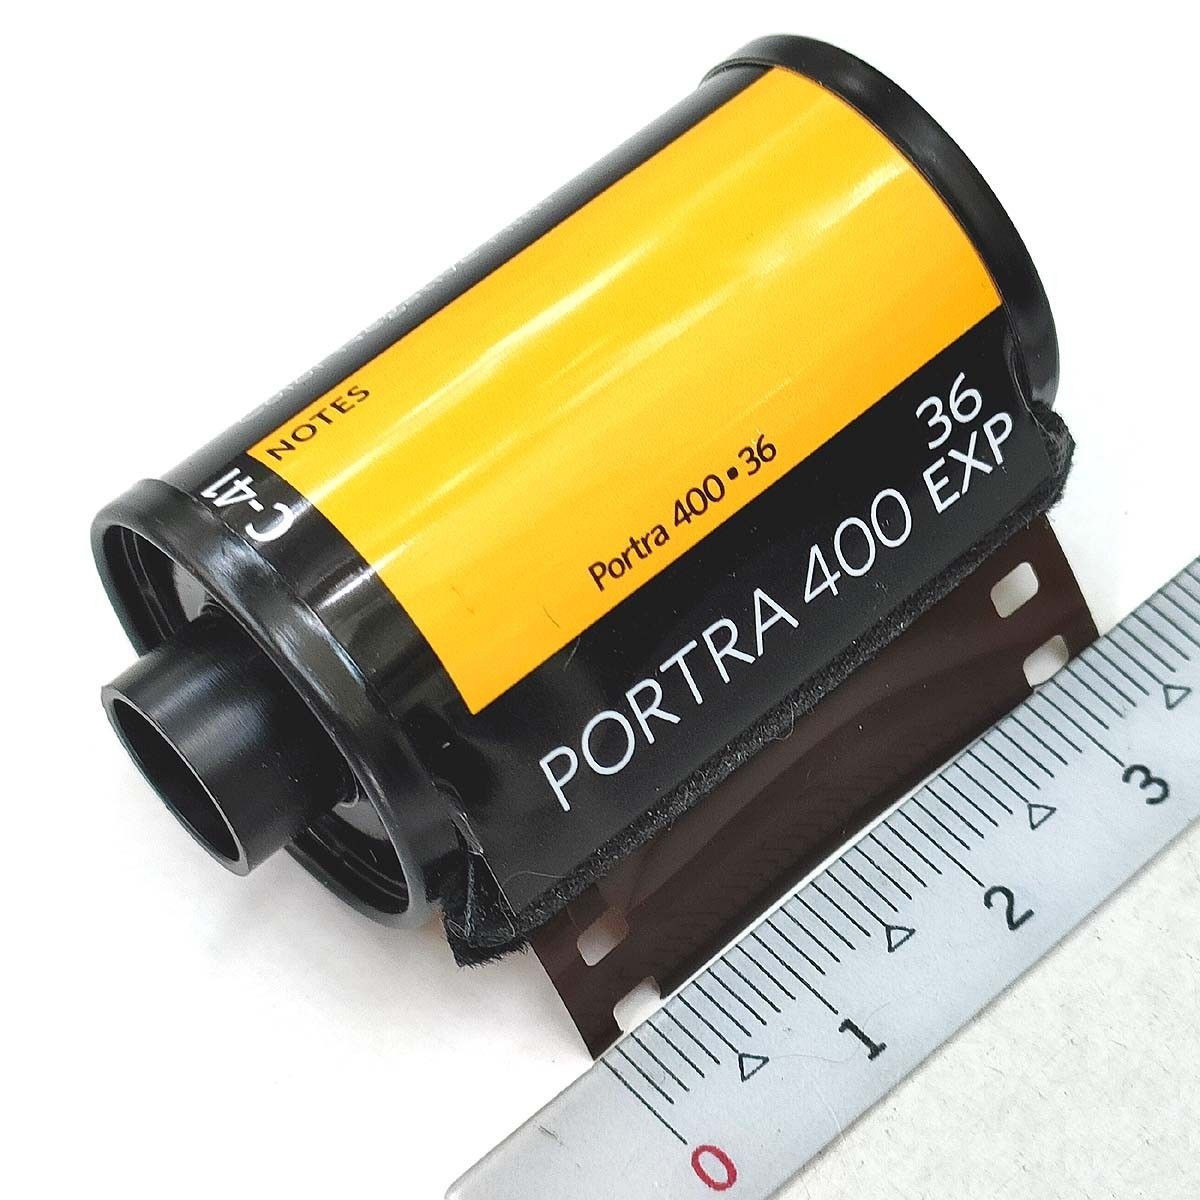 ポートラ400-36枚撮【5本入】Kodak カラーネガフィルム ISO感度400 135/35mm★コダック PORTRA 新品